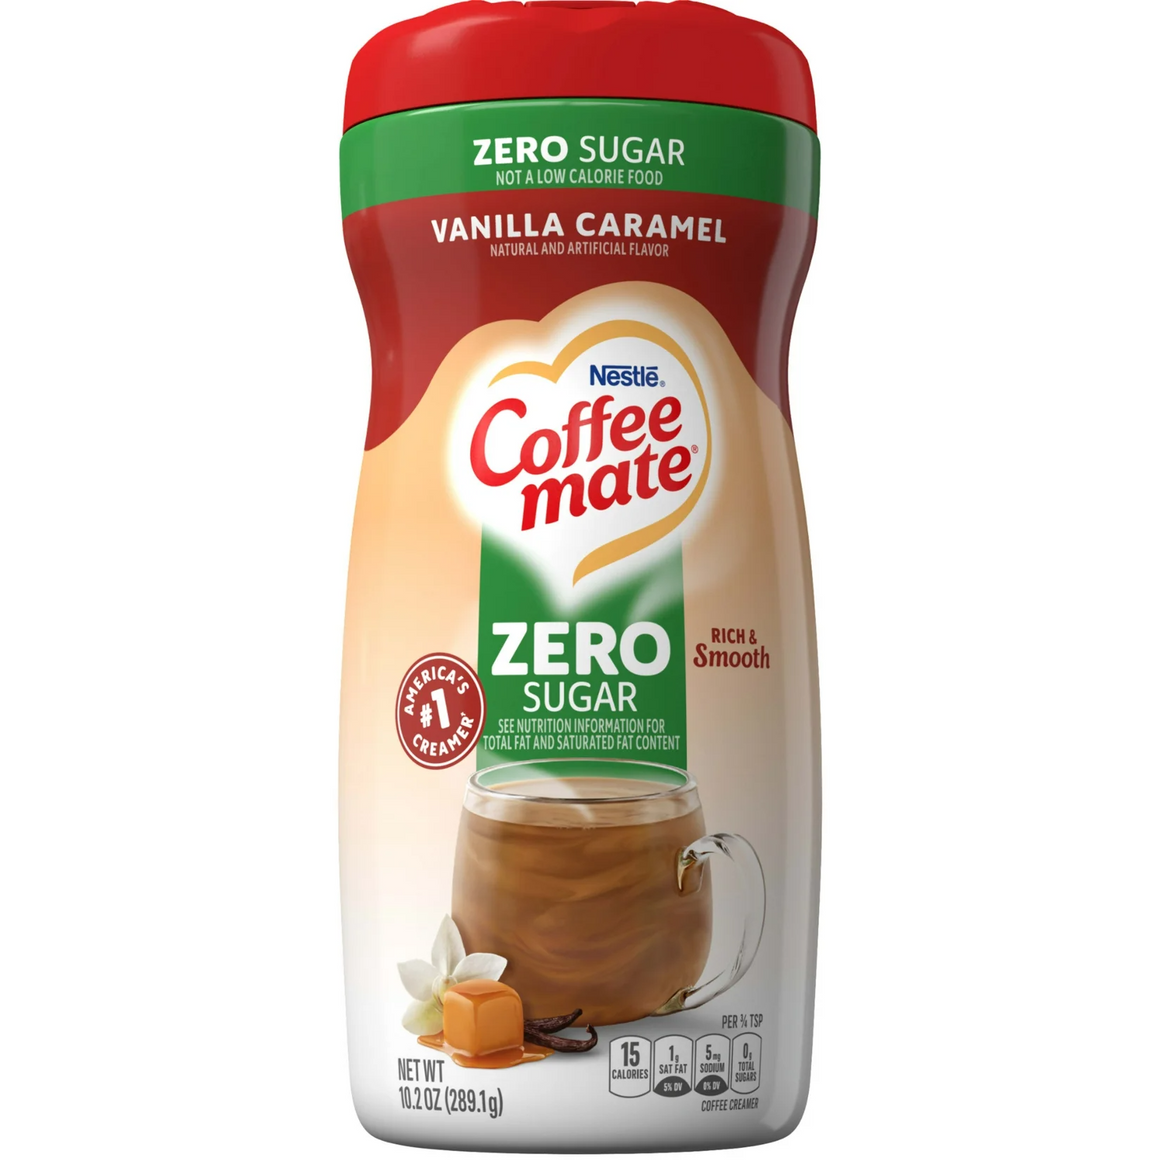 Nestlé - Poudre de café maté sans sucre - Caramel vanille - 10,2 oz 